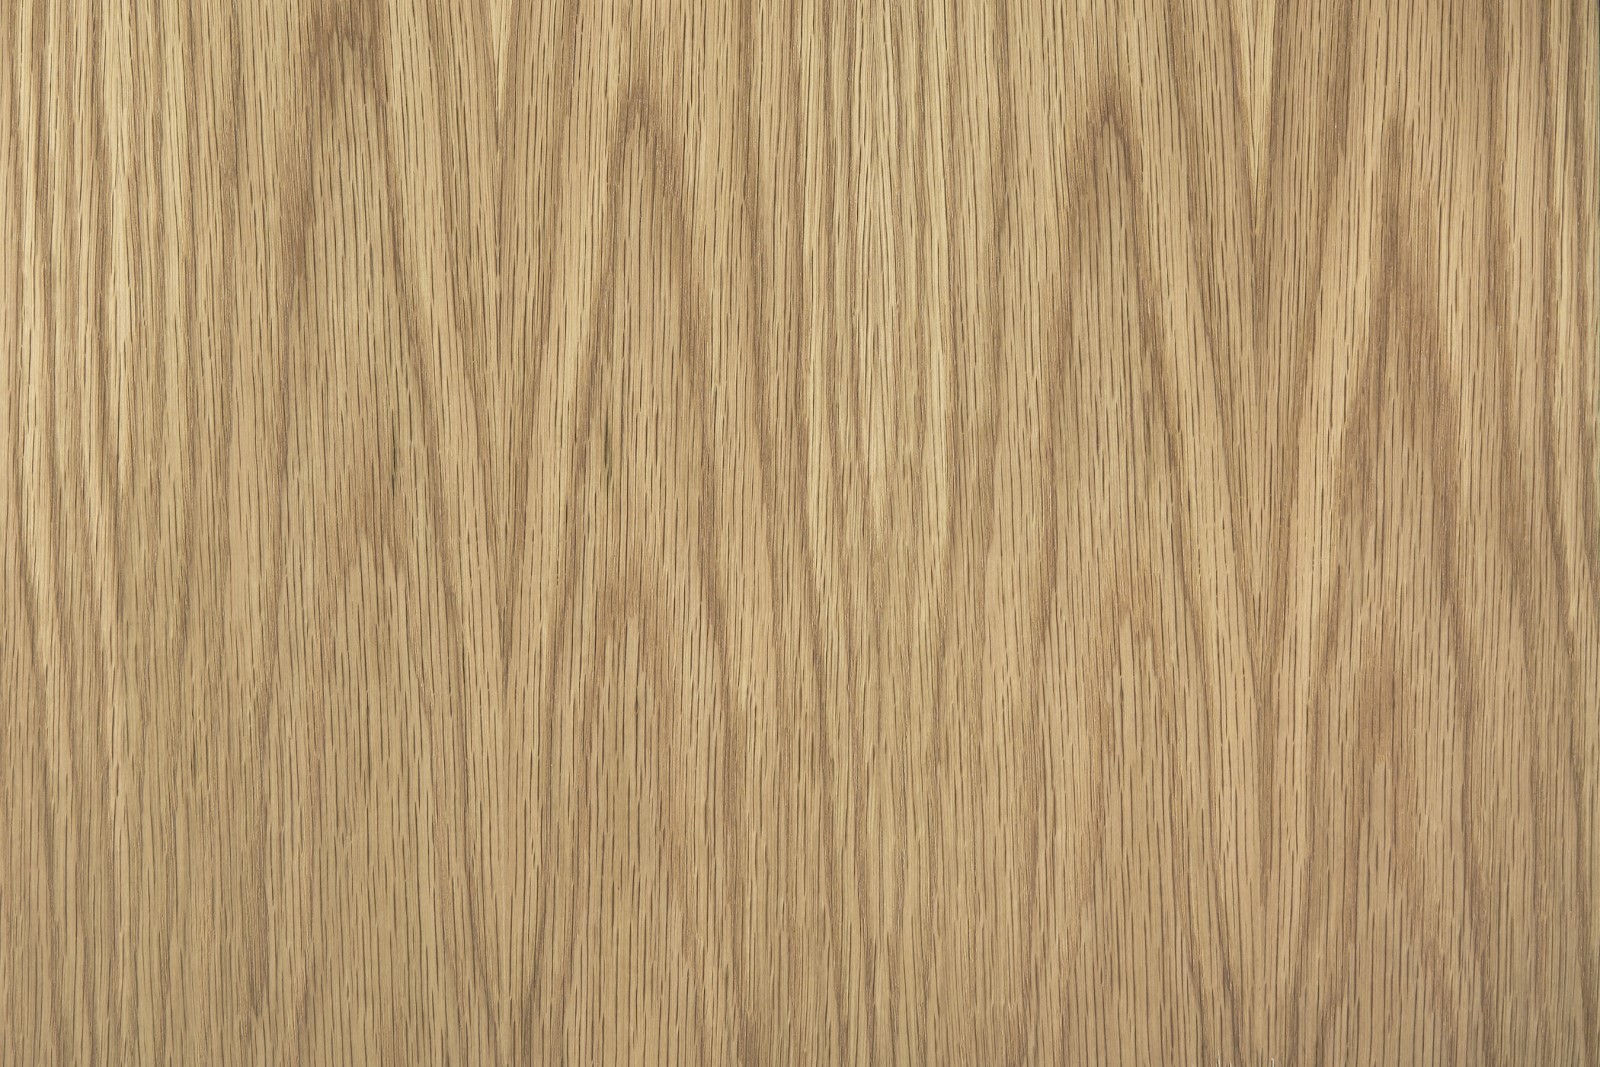 Sàn gỗ phủ Sồi có ưu điểm gì? Có nên lắp đặt sàn gỗ phủ Sồi hay không?